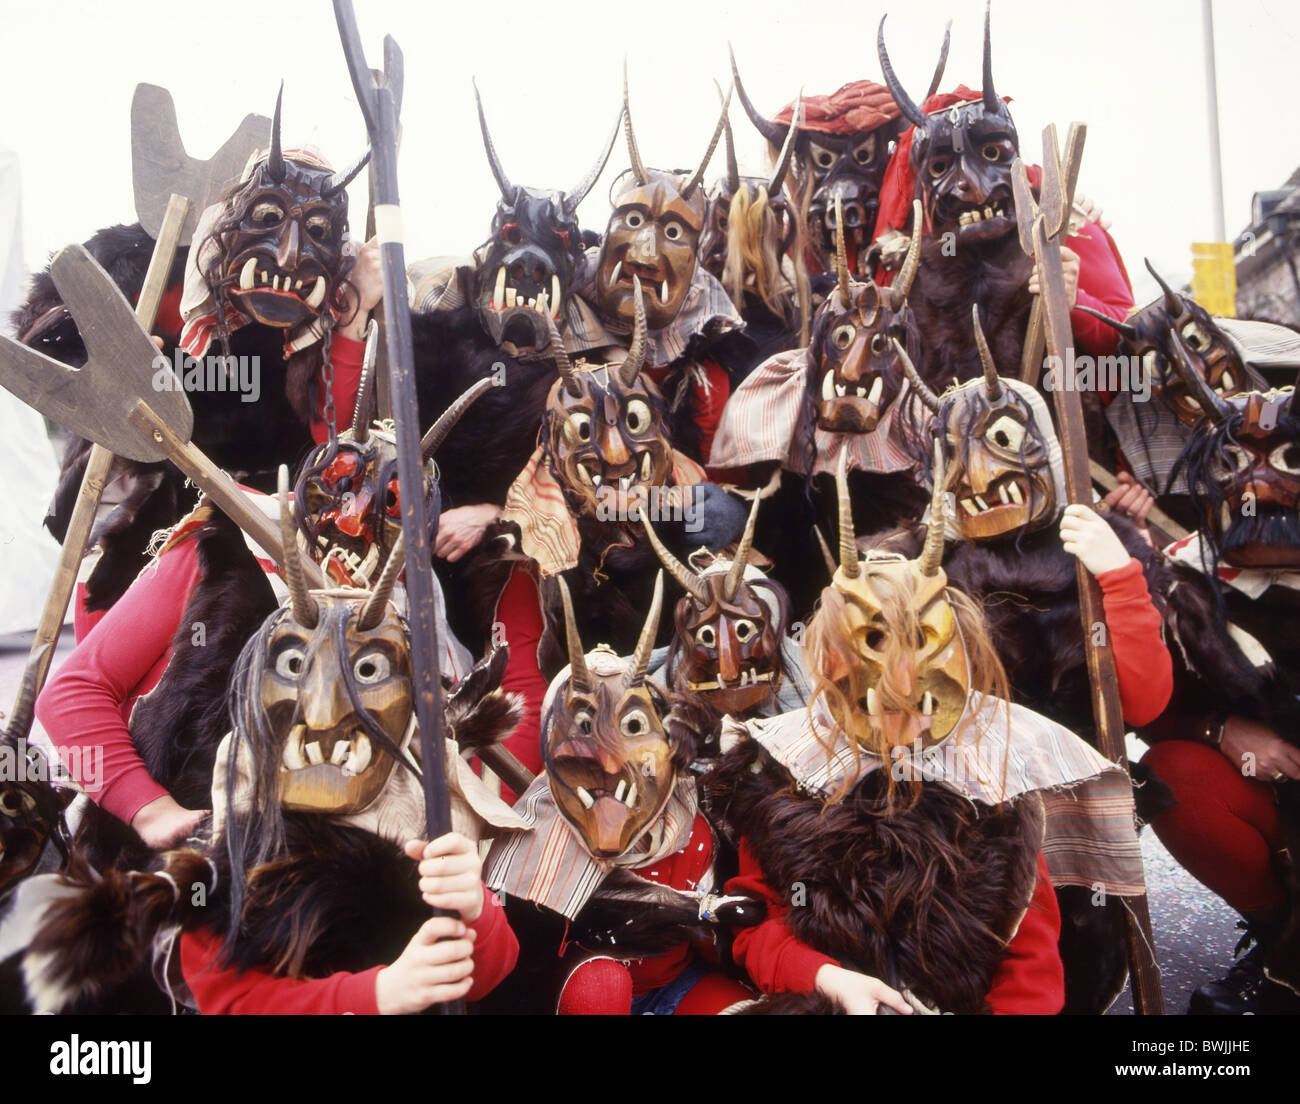 Karnevalsmasken Maske Stockfotos und -bilder Kaufen - Alamy